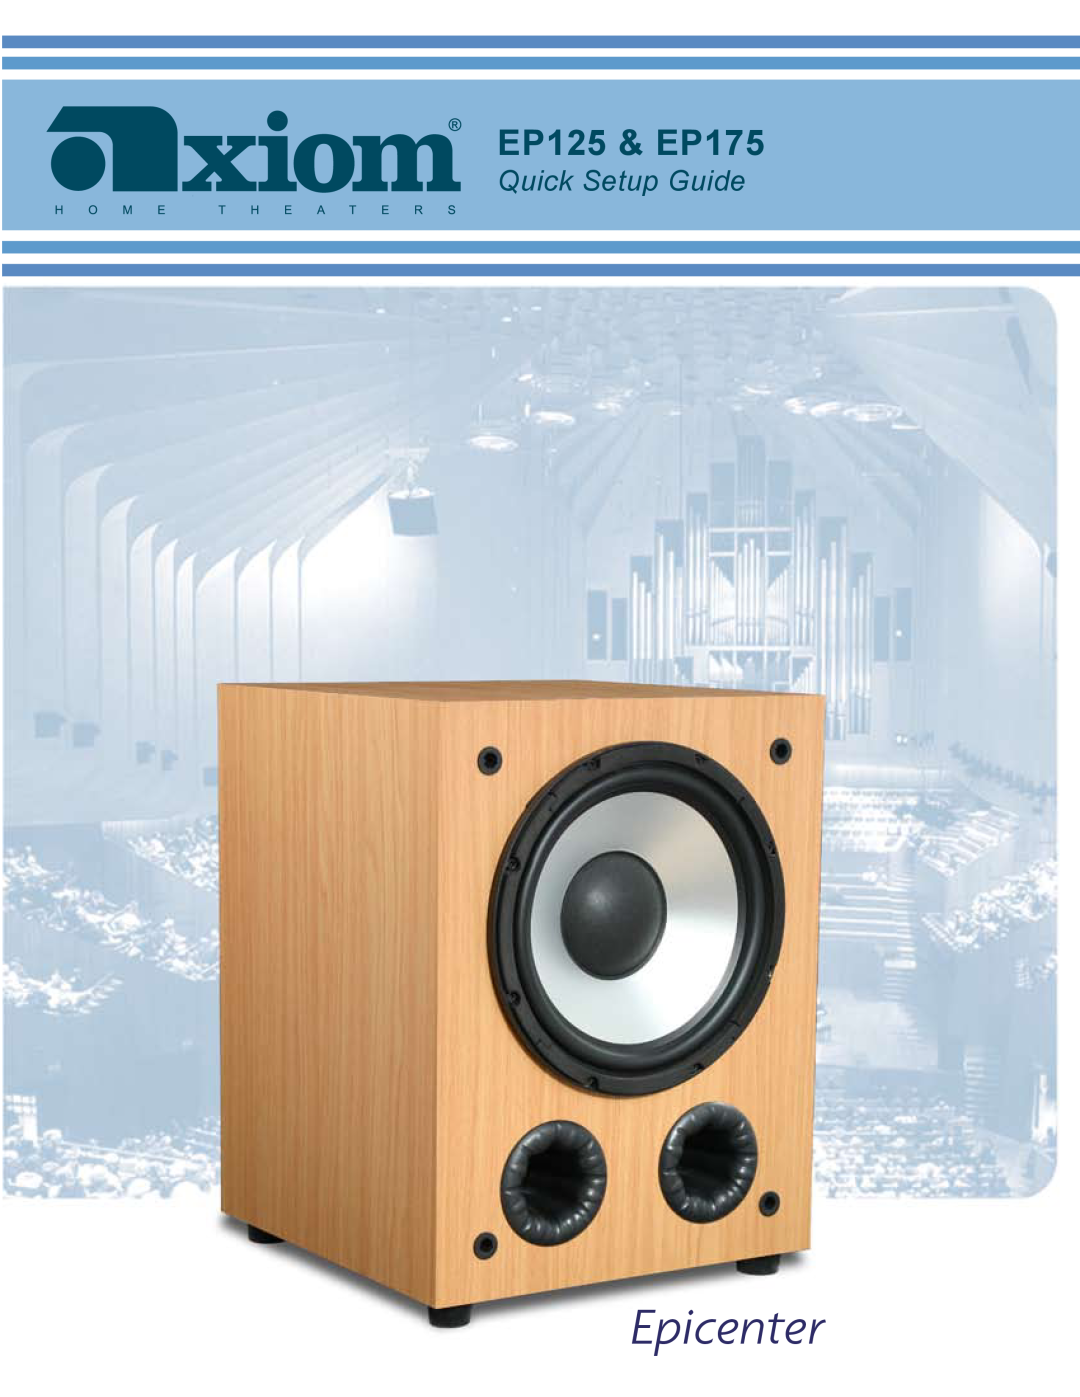 Axiom Audio setup guide Epicenter, EP125 & EP175, Quick Setup Guide 